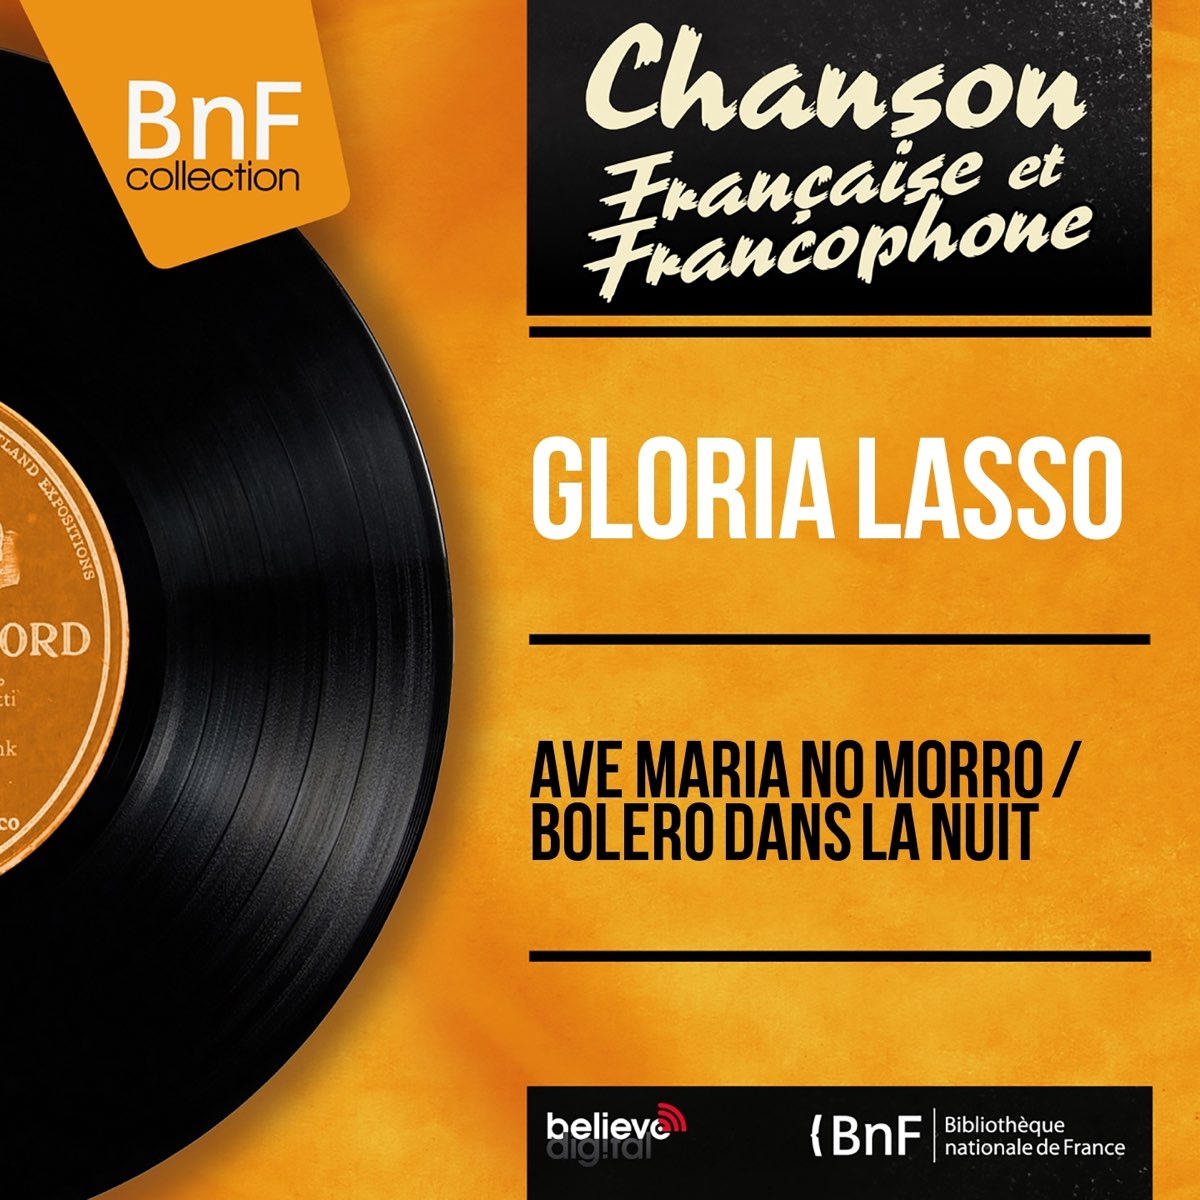 Ave maria no morro / Boléro dans la nuit (feat. Franck Pourcel et son  orchestre) [Mono Version] - Single by Gloria Lasso on Apple Music